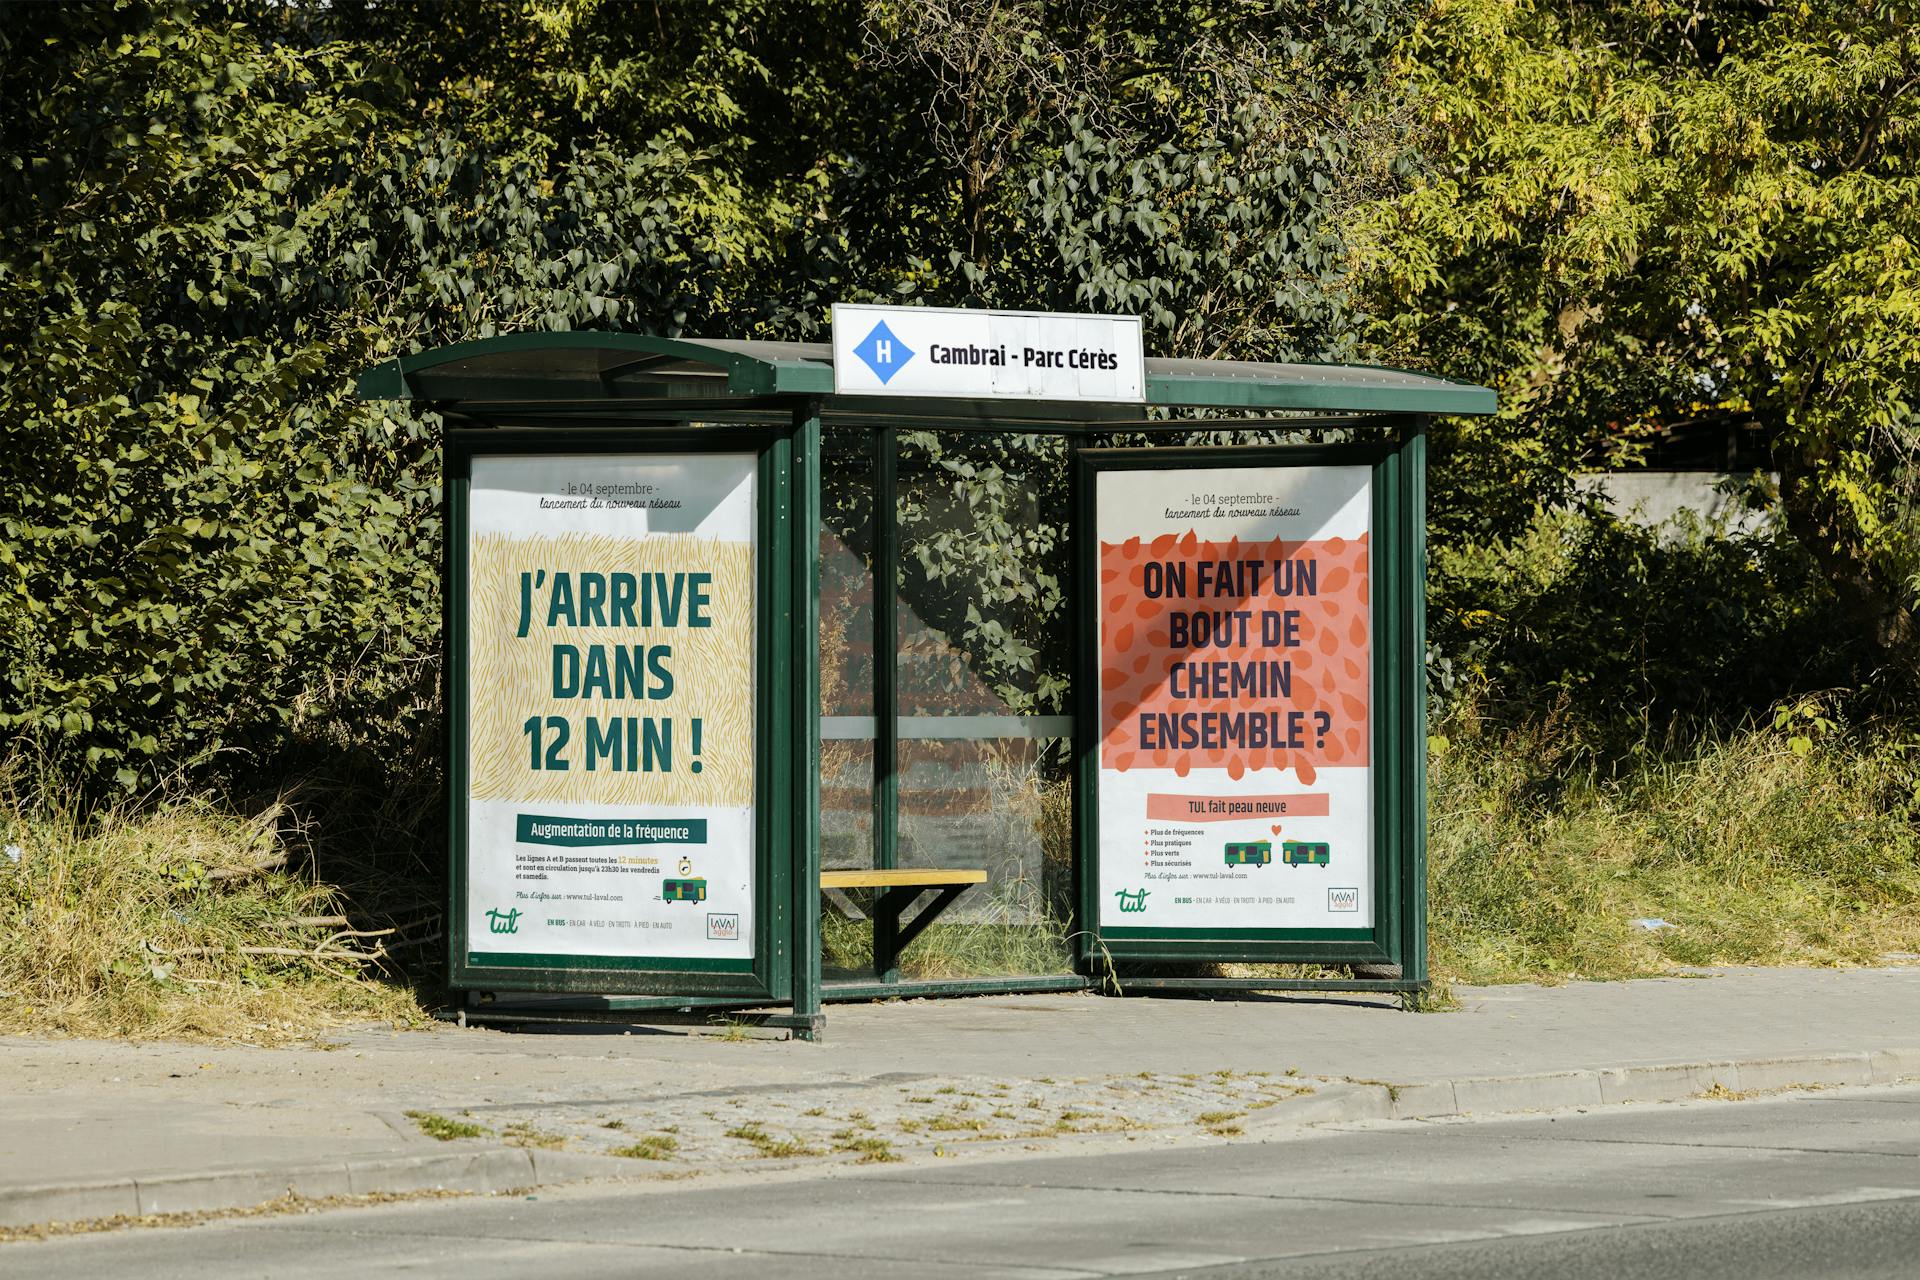 Mockup d'une campagne publicitaire sur abribus, présentant les nouveaux services de mobilité de la marque TUL.